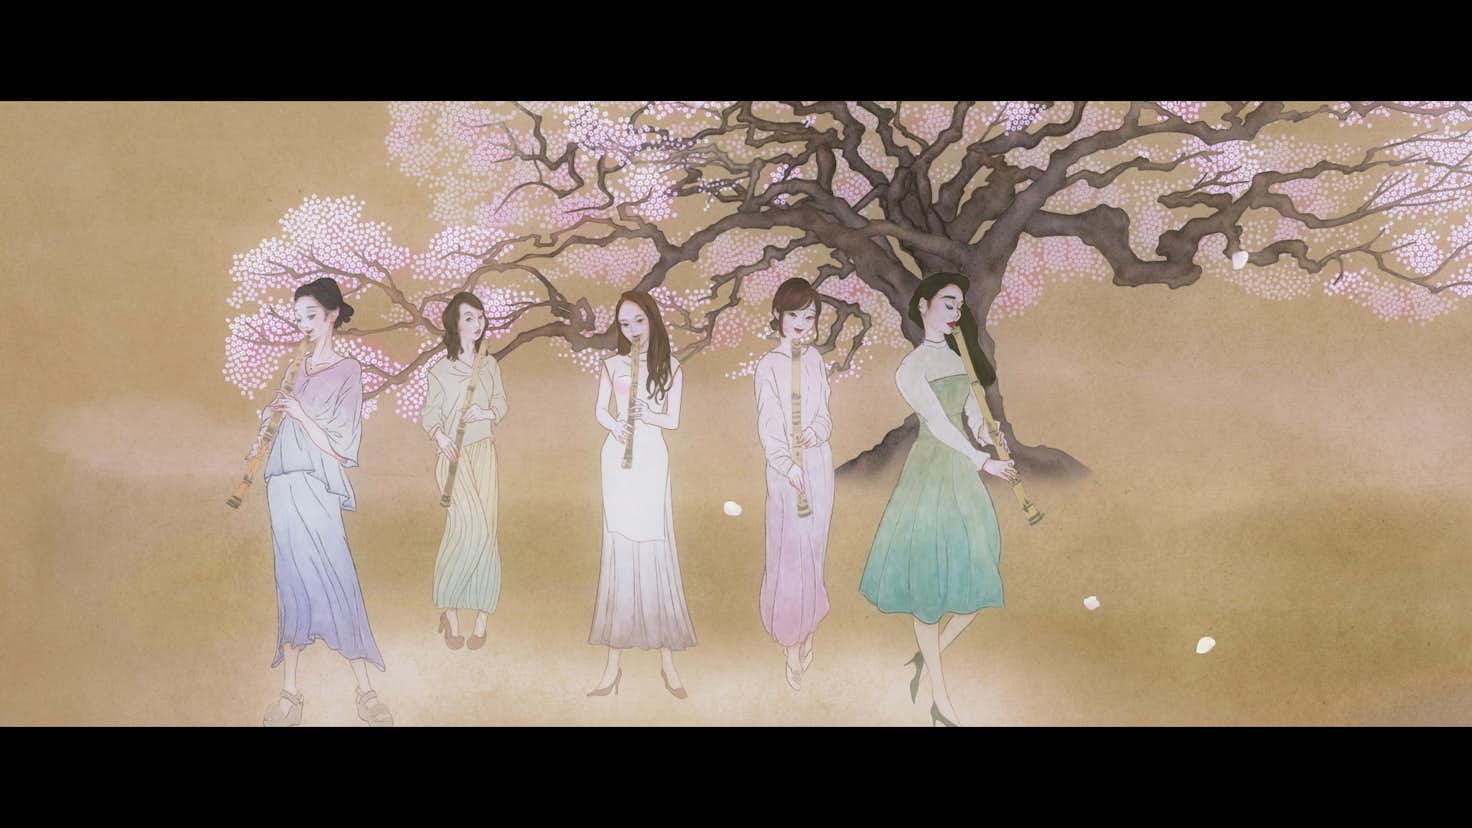 日本画が変化する デジタル絵巻 で見るジャパンカルチャーの融合 和楽器プロジェクト 日本画家のミュージックビデオが公開 美術手帖